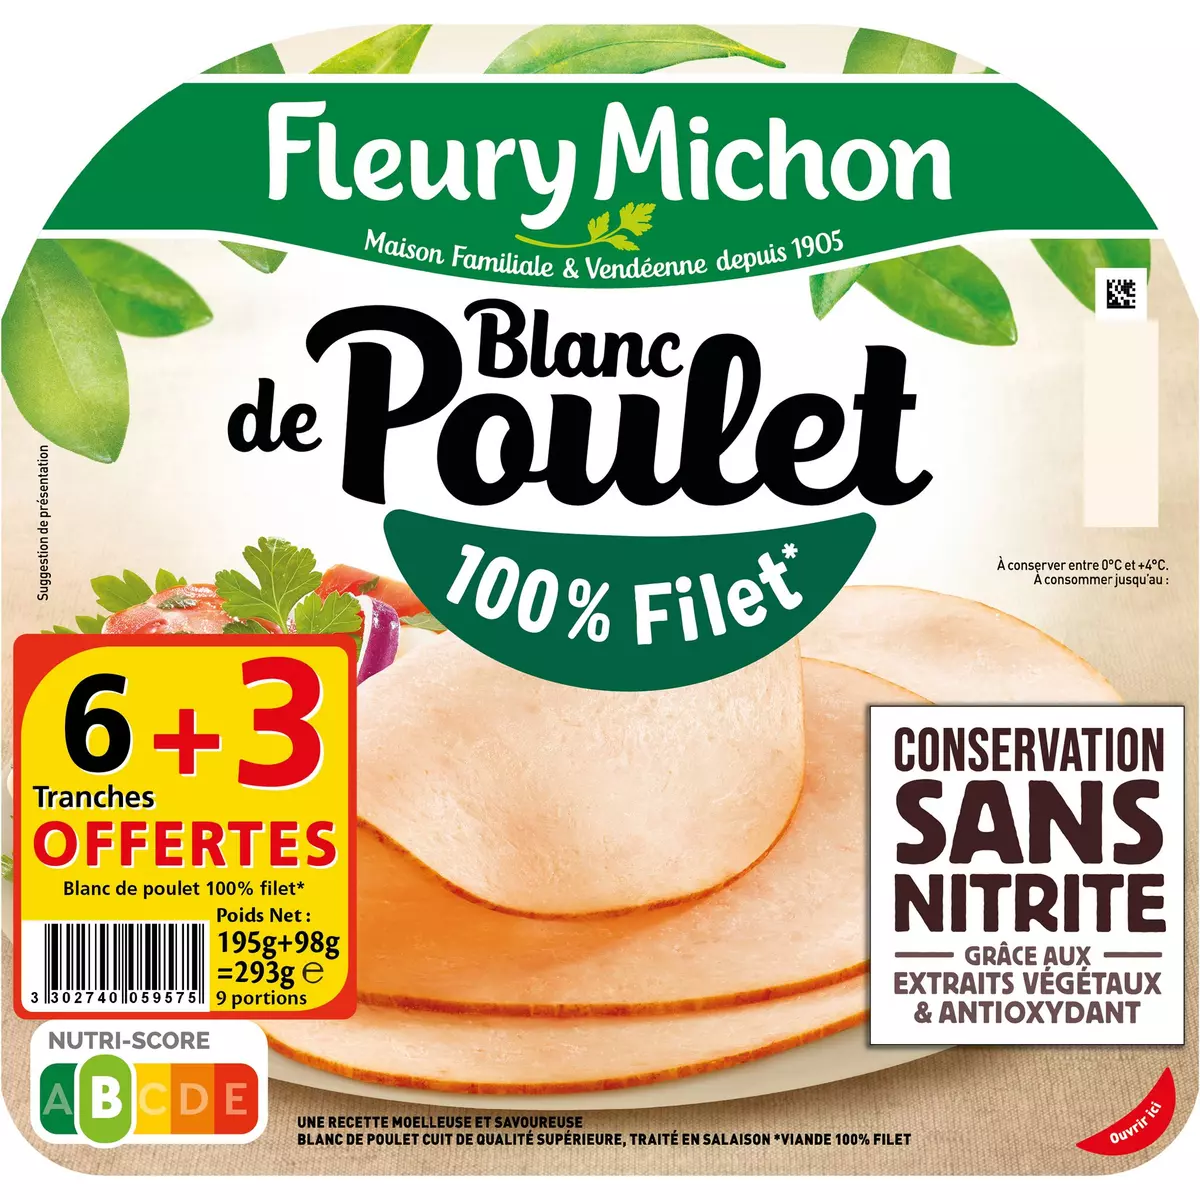 FLEURY MICHON Blanc de poulet 100% filet sans nitrite 6 tranches+3 offertes 293g